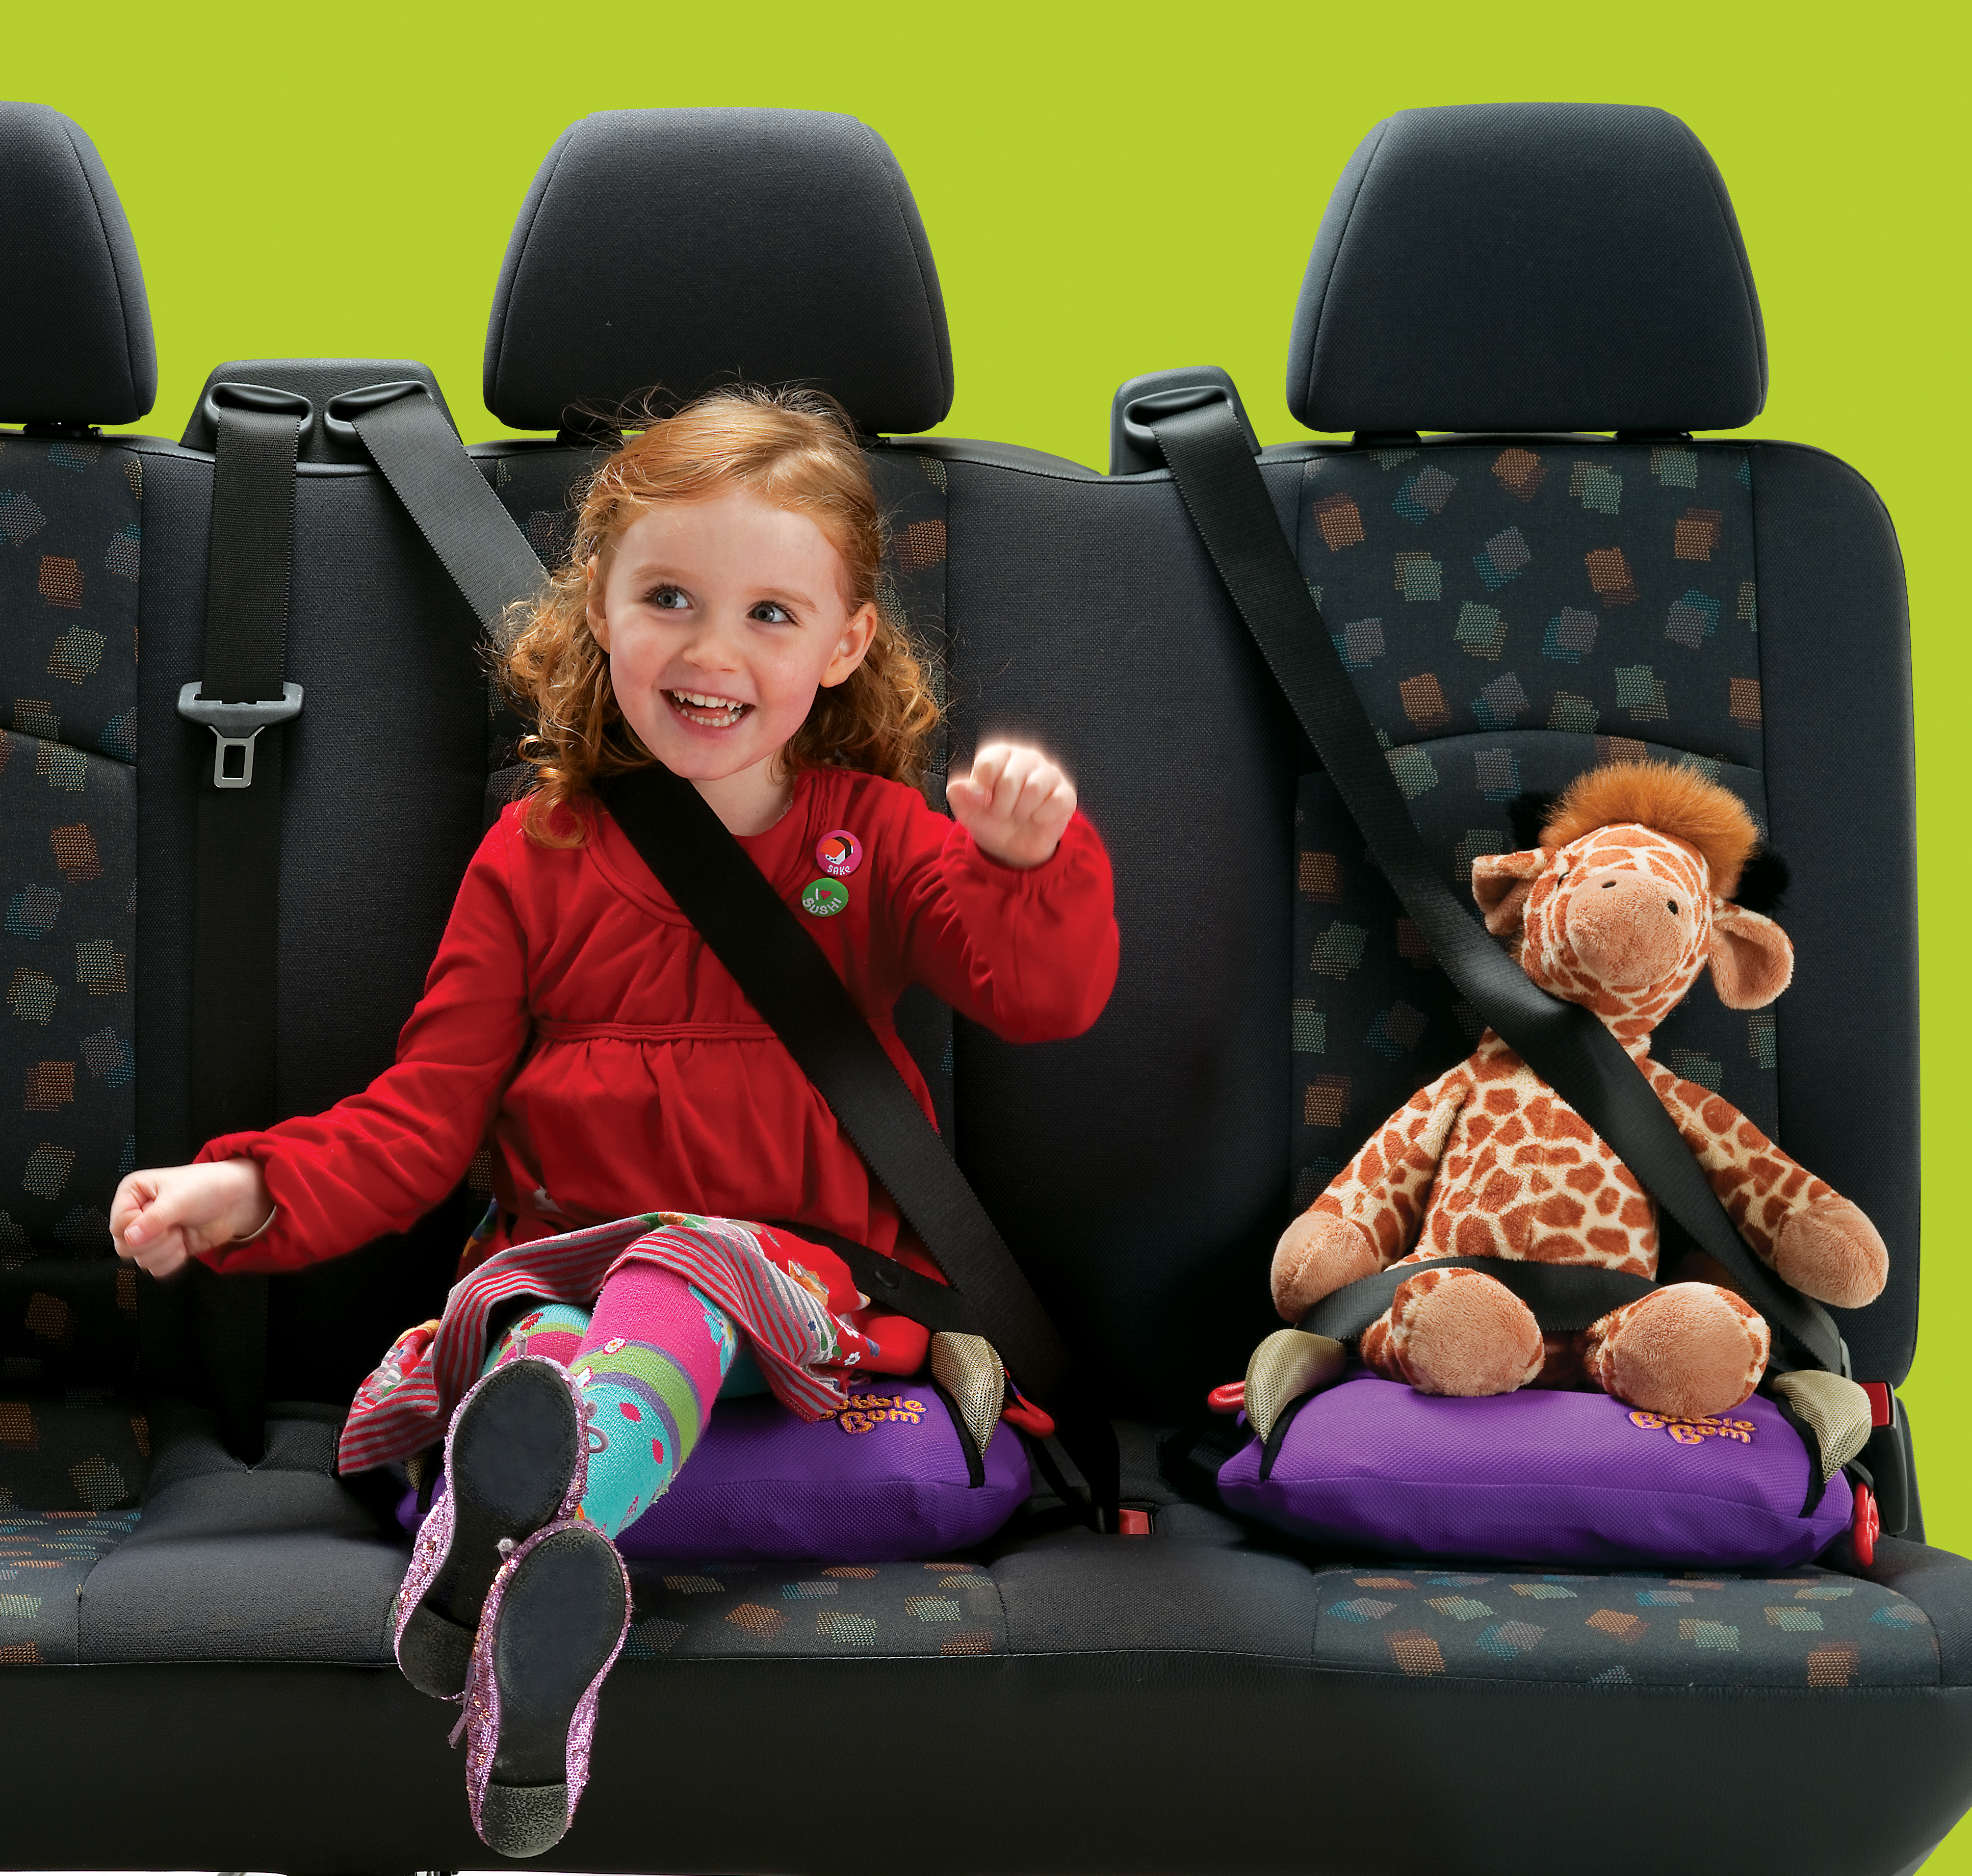 Пристегиваем ребенка в машине. Сиденье для ребенка в машину. Детские ремни безопасности для автомобиля. Ребёнок в автомобиле пристёгнут. Кресло безопасности для детей.